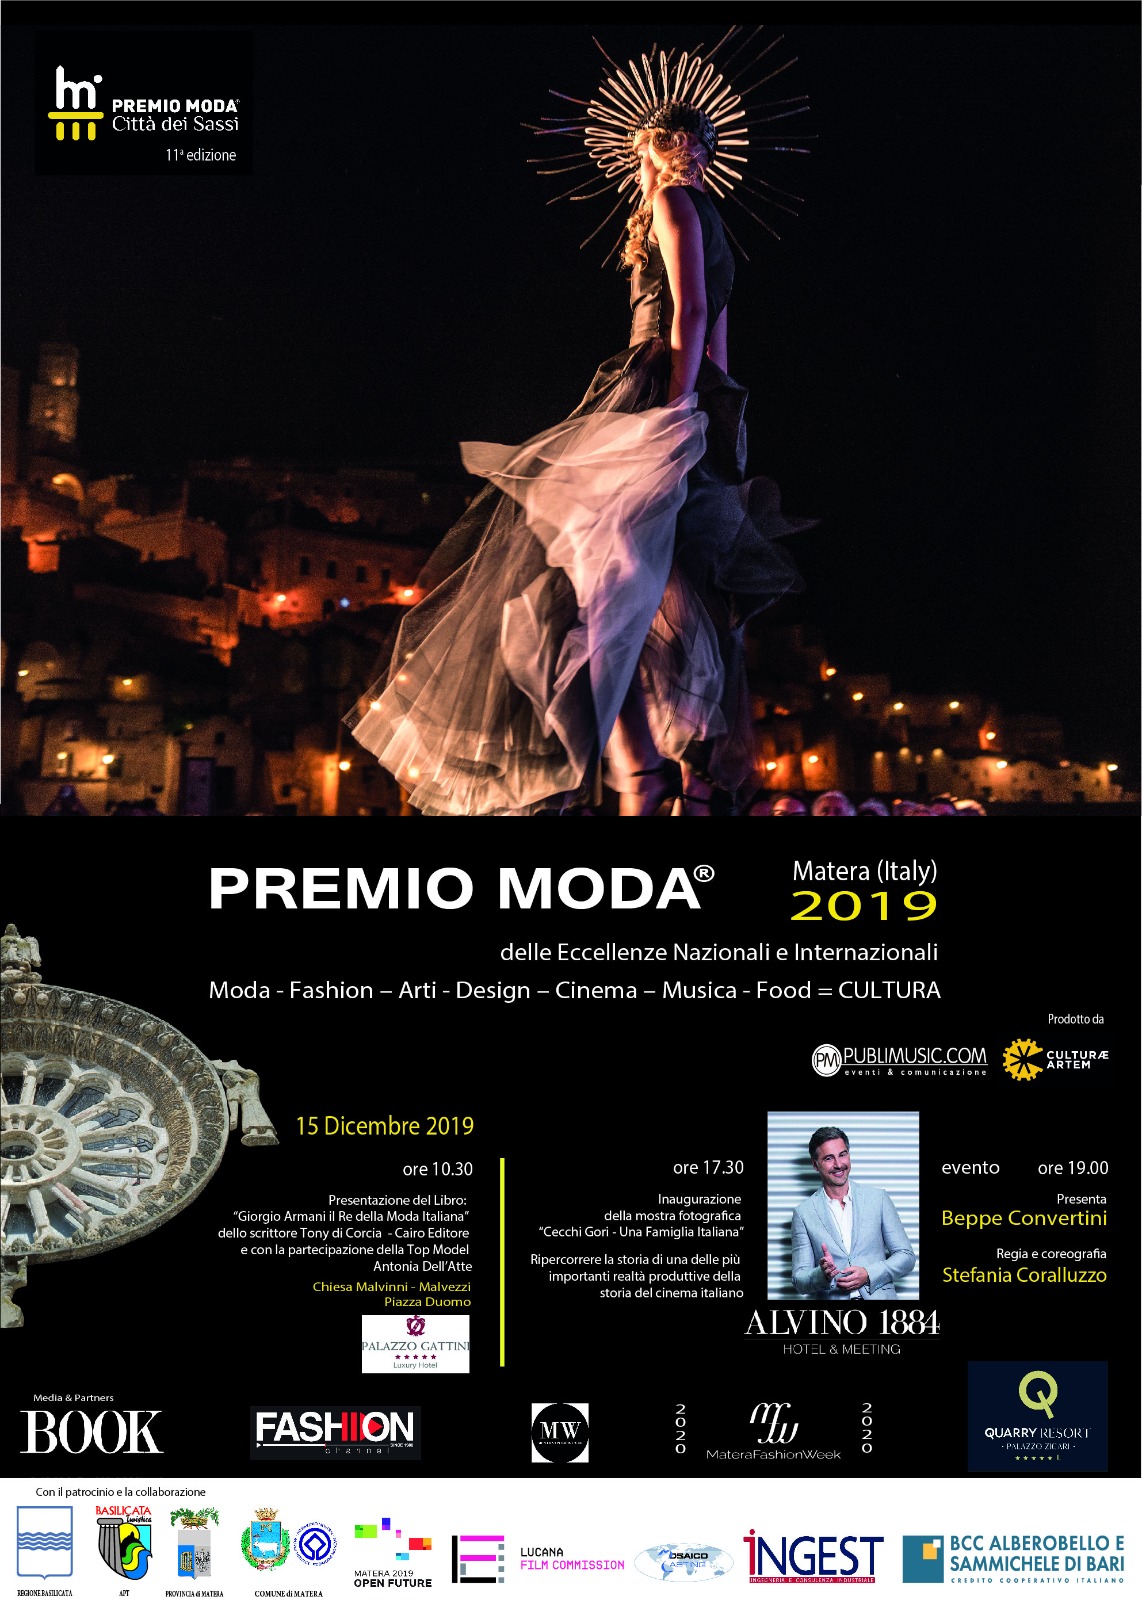 Il 15 dicembre Matera Capitale dell’eleganza con il Premio Moda “Città dei Sassi” 2019